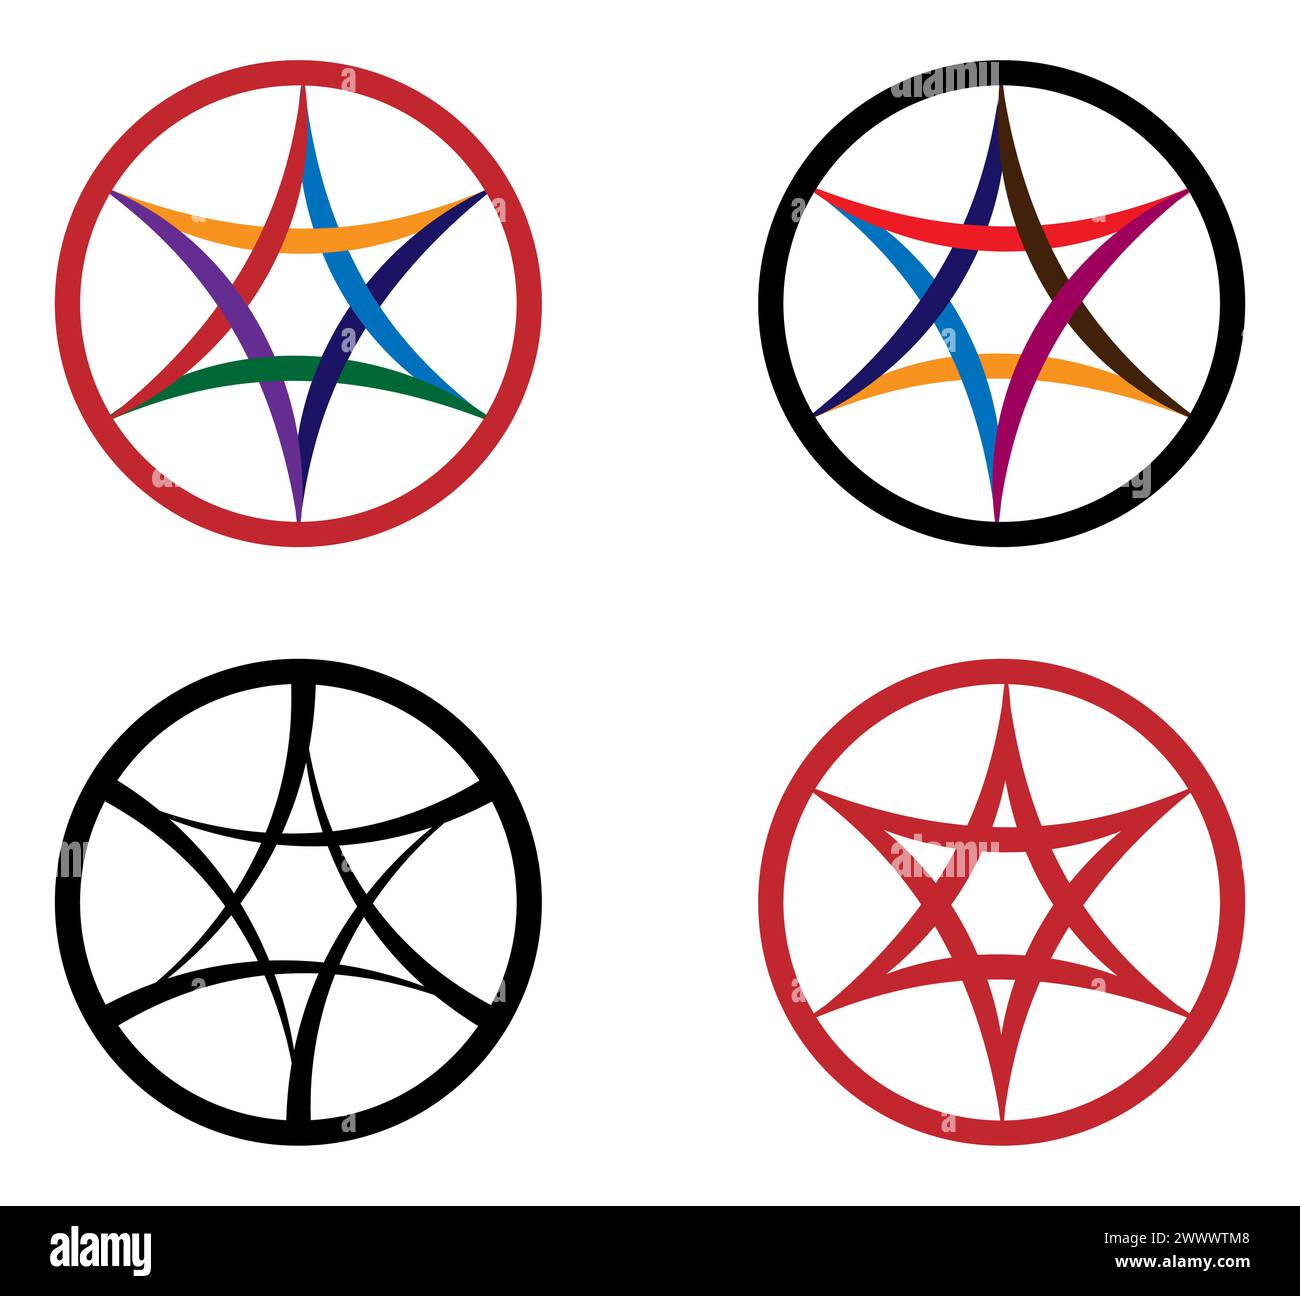 Sei stelle appuntite in una cornice circolare con triangoli di archi ricurvi interlacciati. Illustrazione Vettoriale